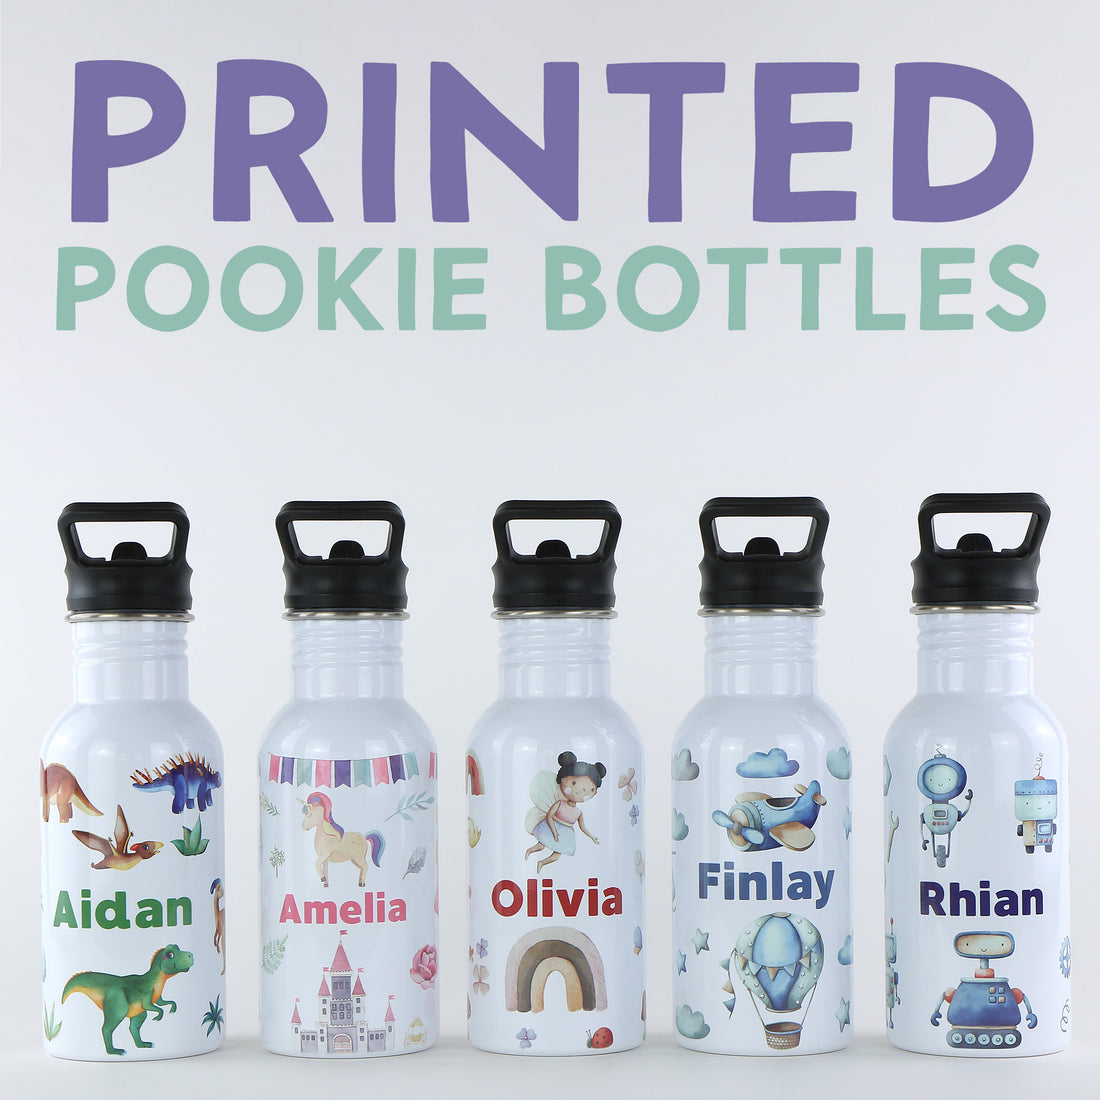 Printed Pookie Bottles